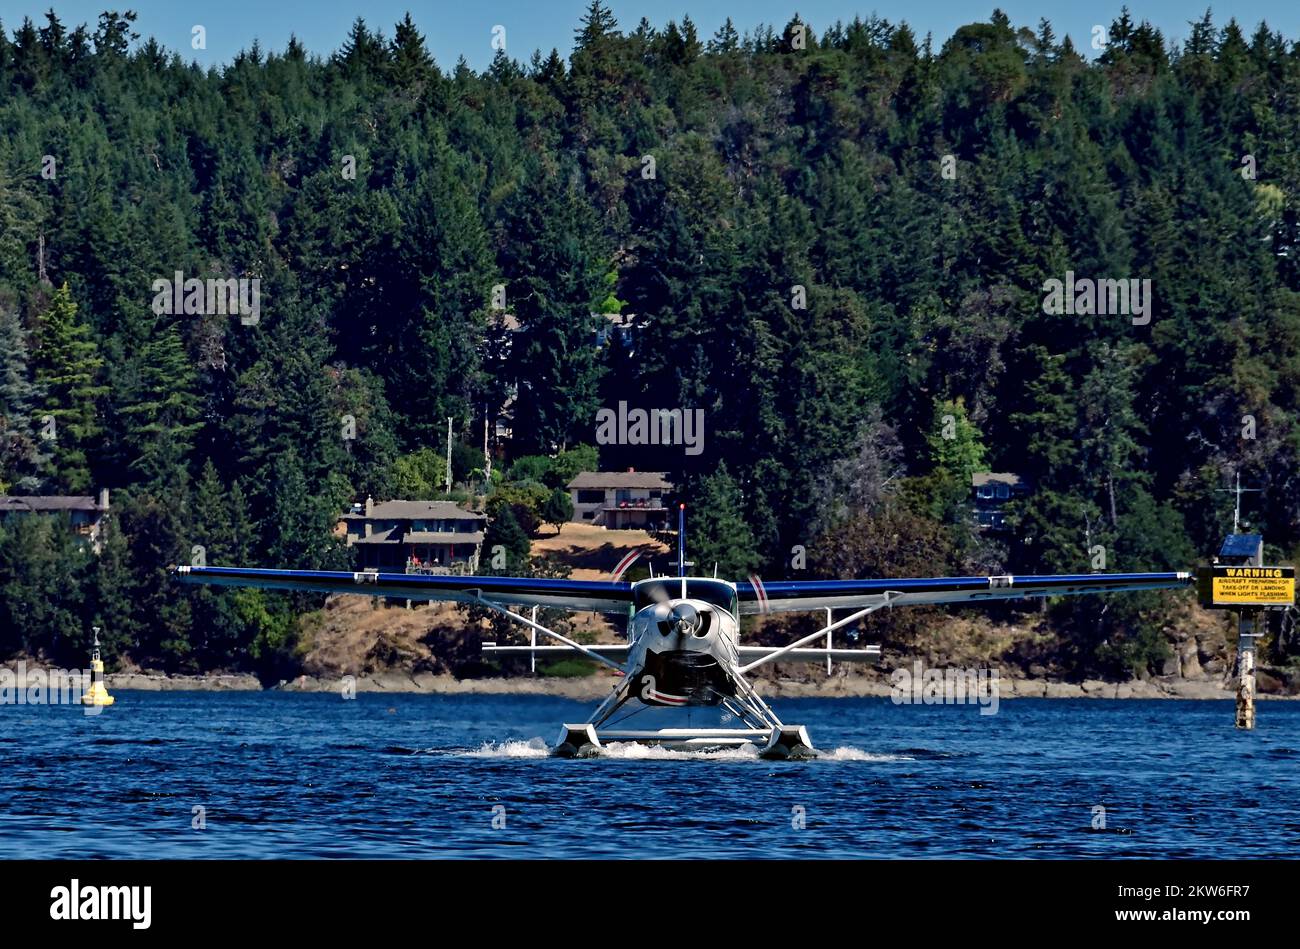 Eine Vorderansicht eines Wasserflugzeugs, das an der Küste von Vancouver Island in British Columbia, Kanada, auf dem Wasser startet. Stockfoto